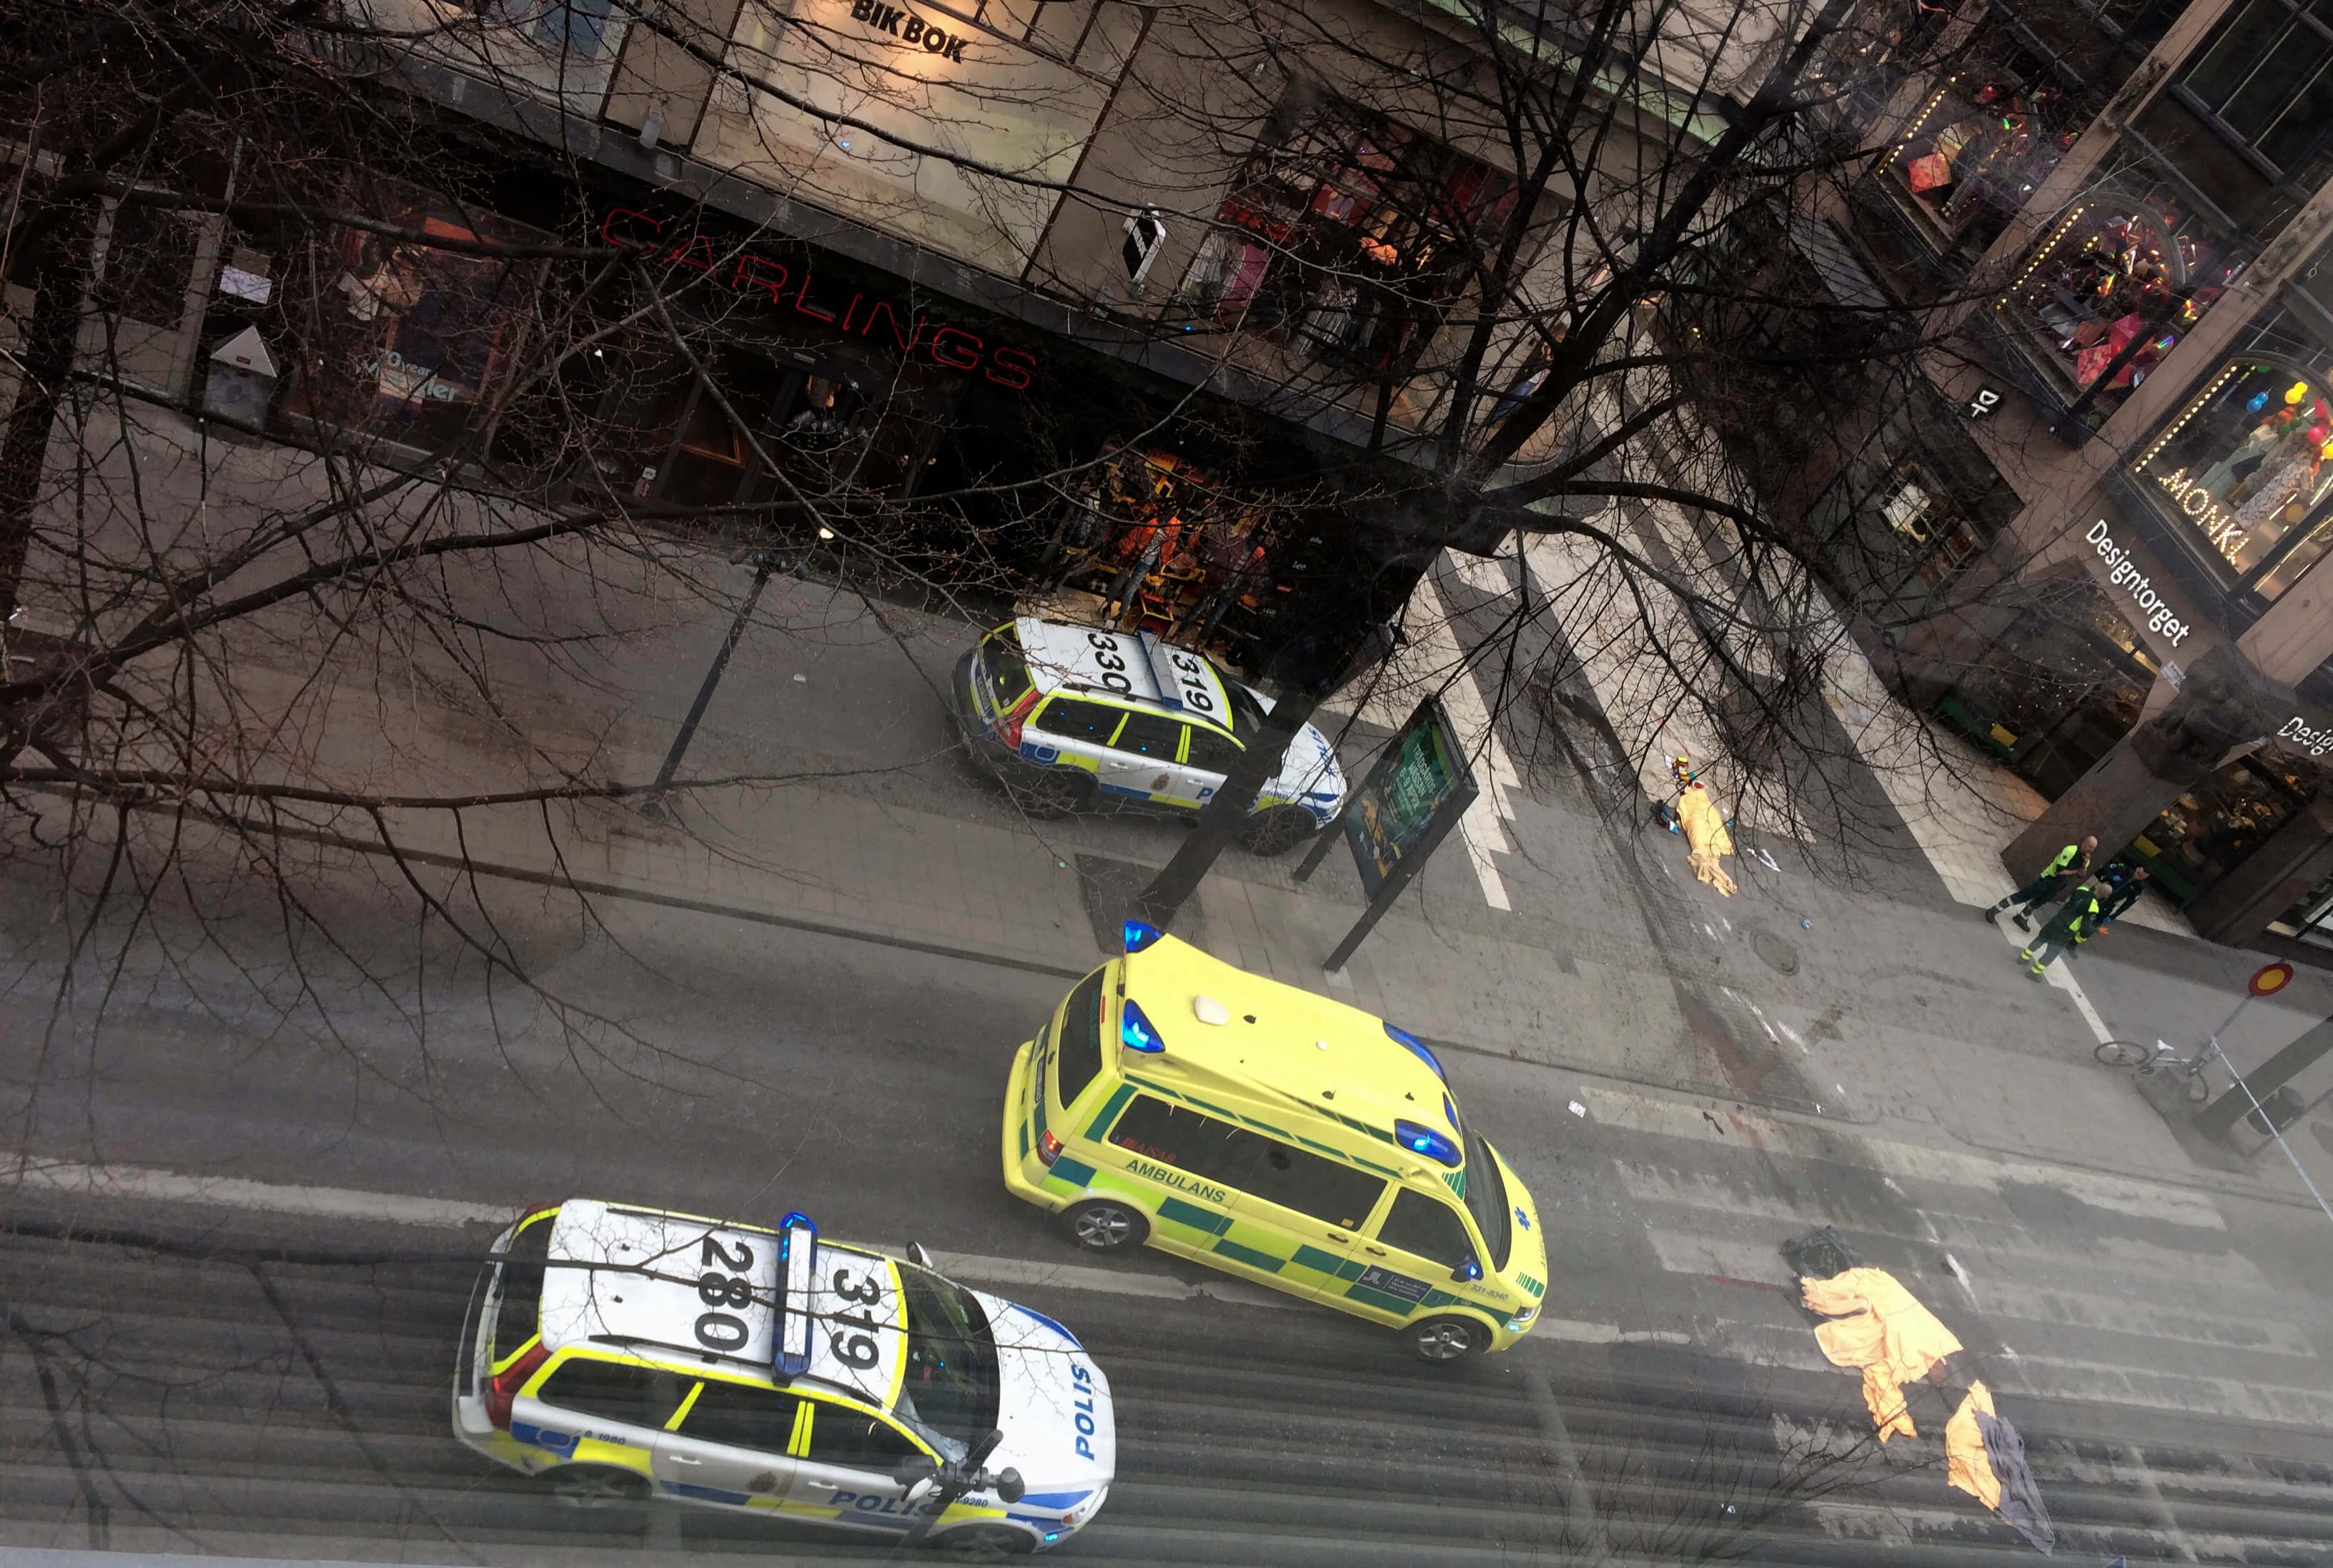 Patrullas de Policía responden al atentado en Estocolmo, Suecia (AP)